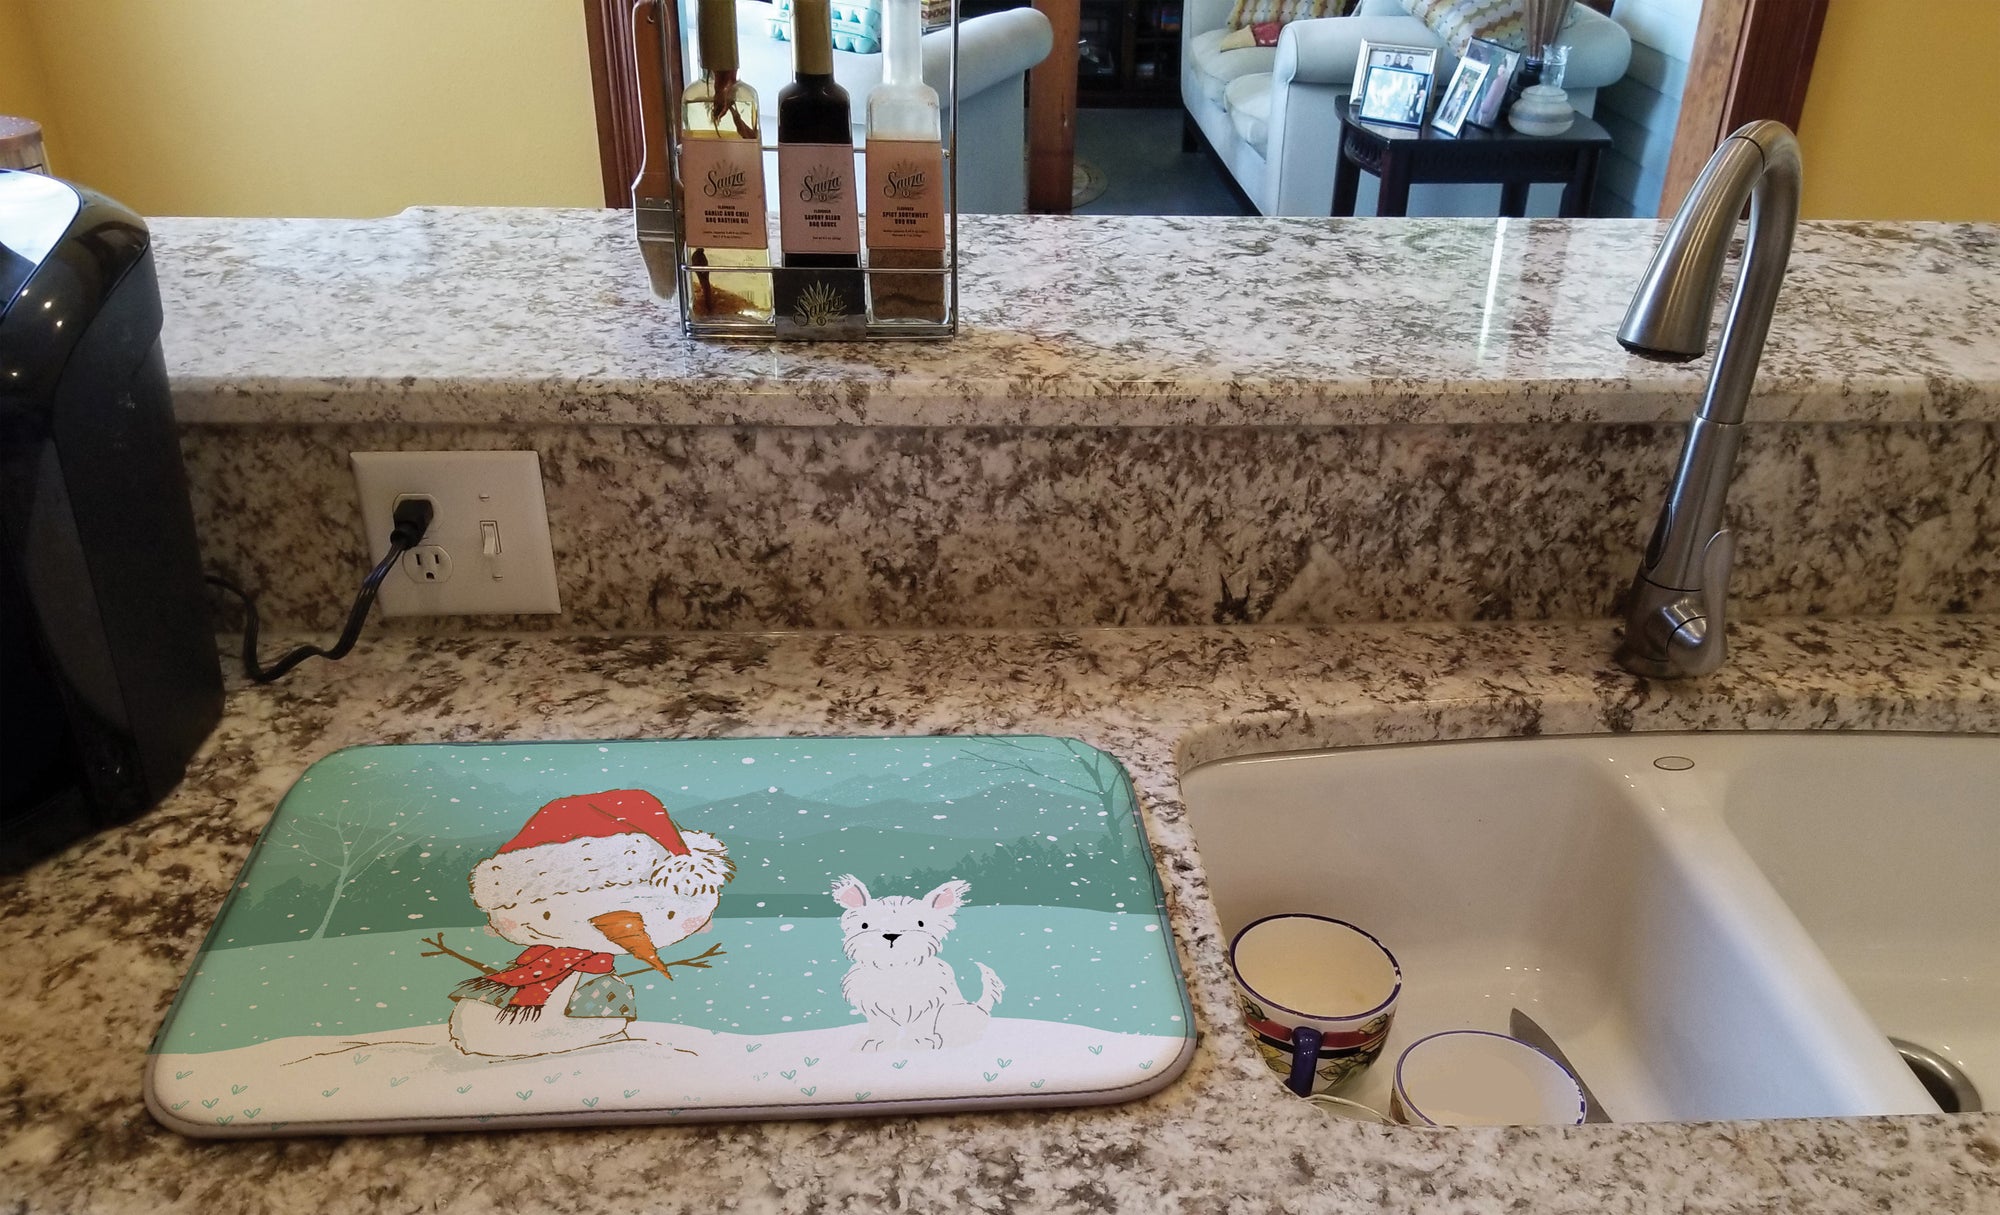 Westie Terrier Snowman Christmas Dish Drying Mat CK2097DDM